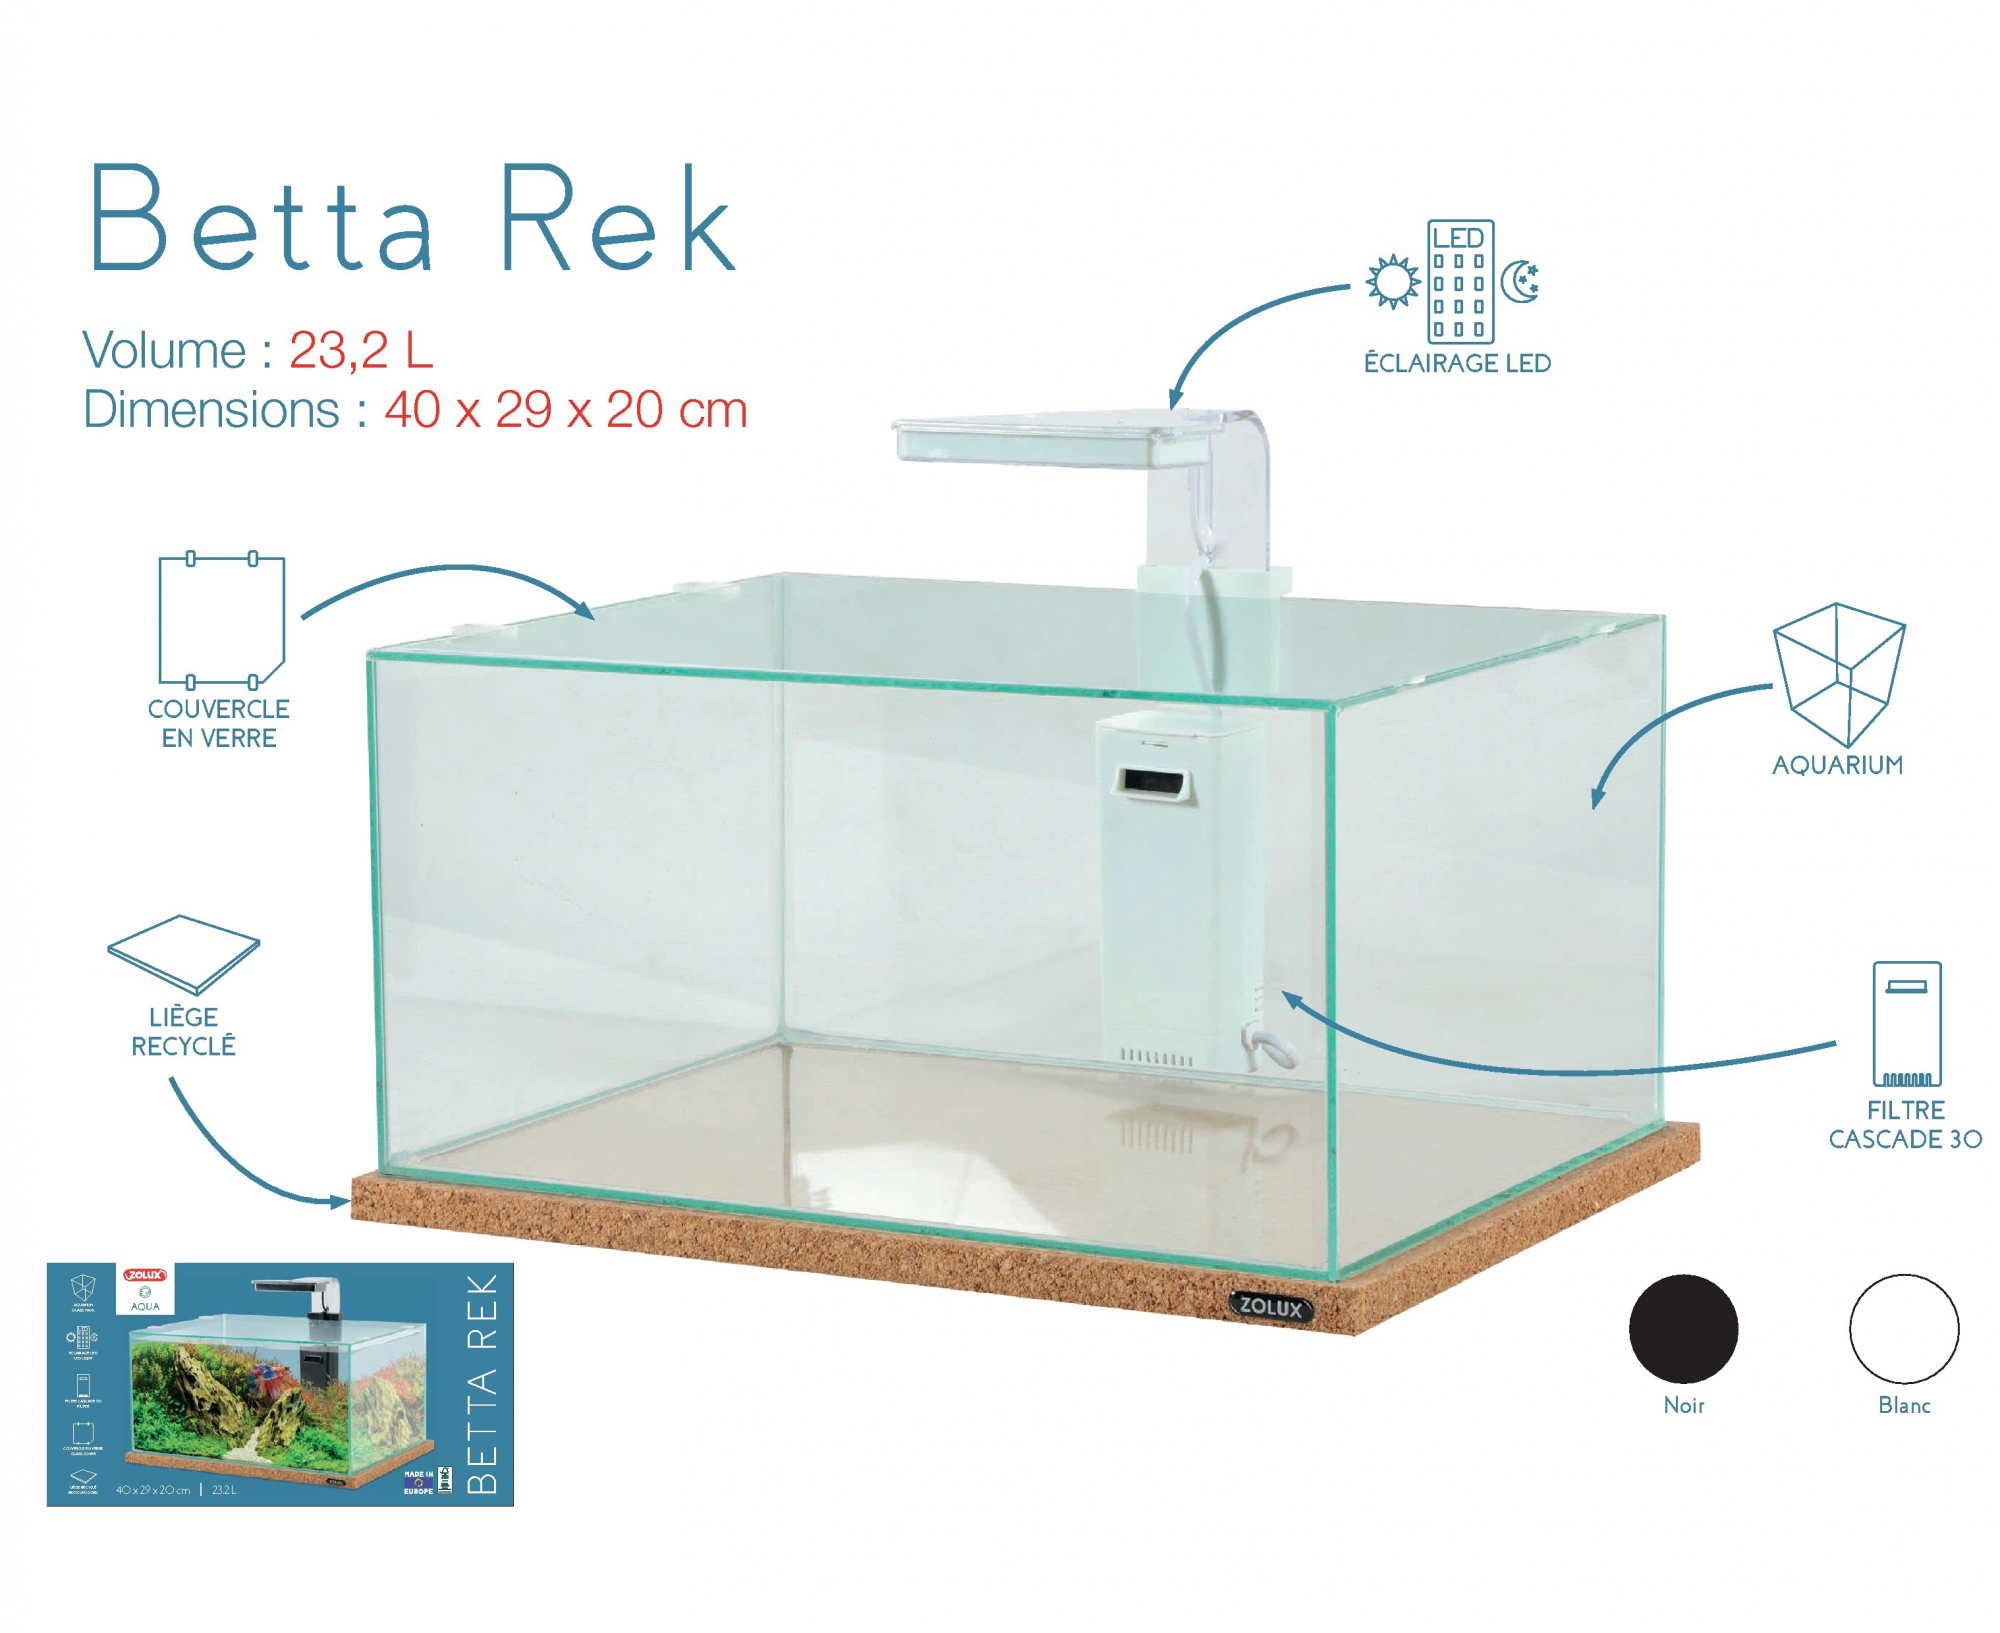 Kit de acuario Betta Rek - 23,2 L - blanco o negro